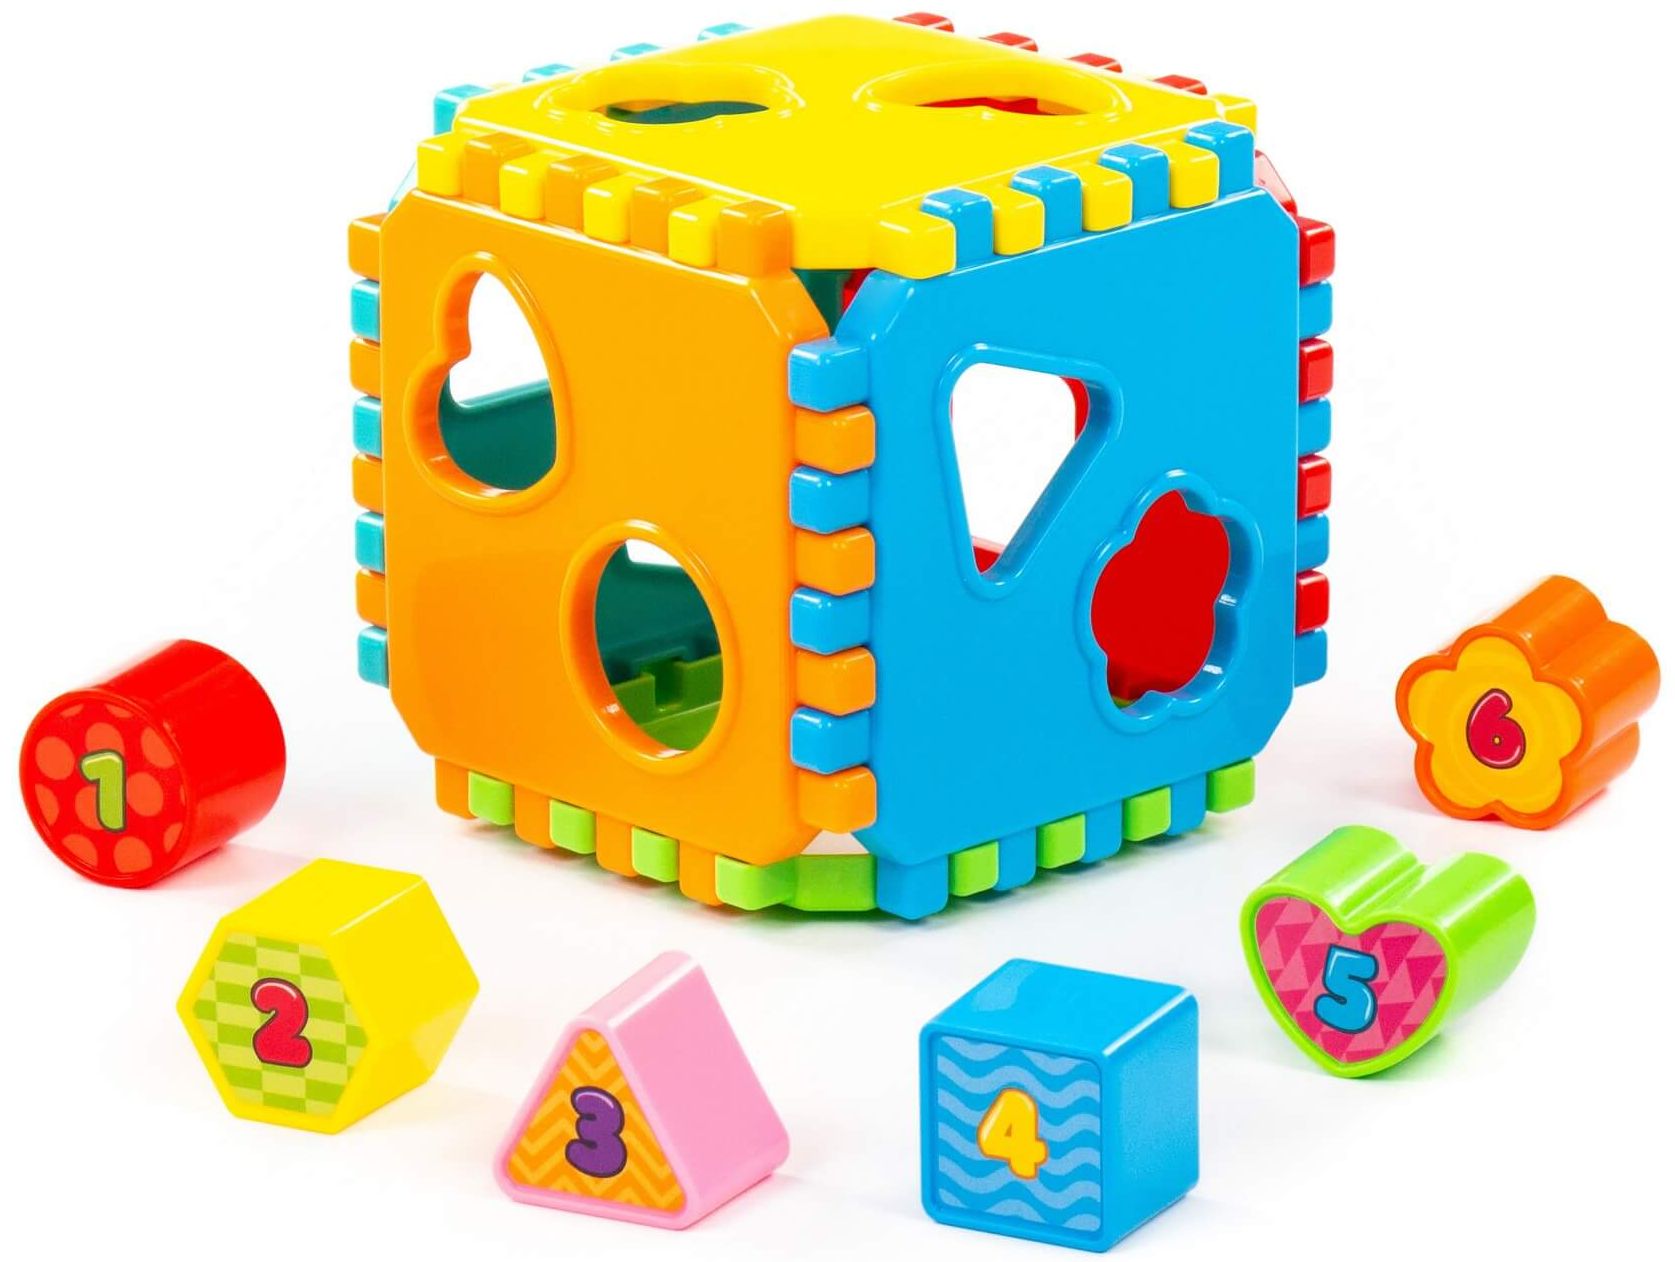 Игрушка развивающая "Куб" (в сеточке) \ 91642 Полесье